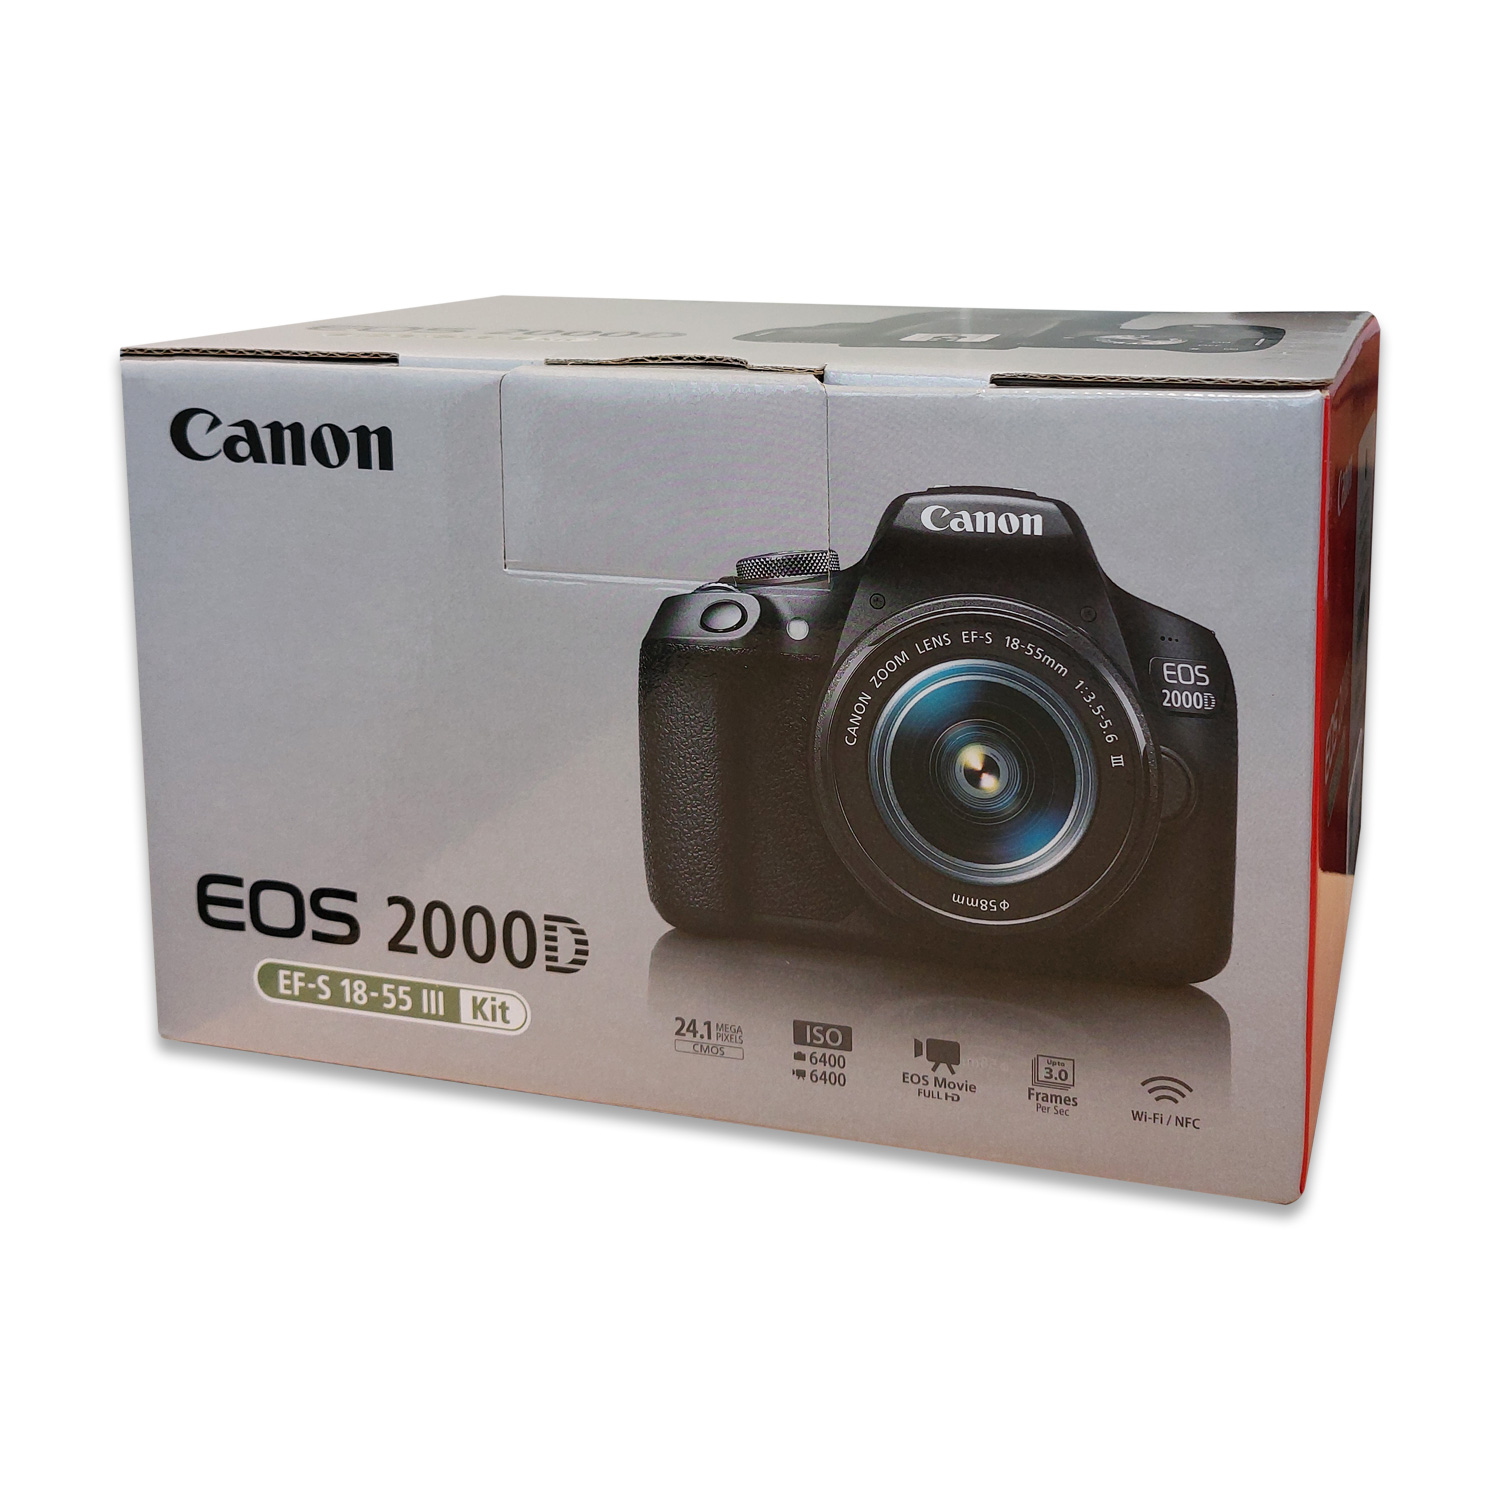 Canon EOS 2000D Spiegelreflexkamera mit Objektiv EF-S 18-55 III Kit von Canon